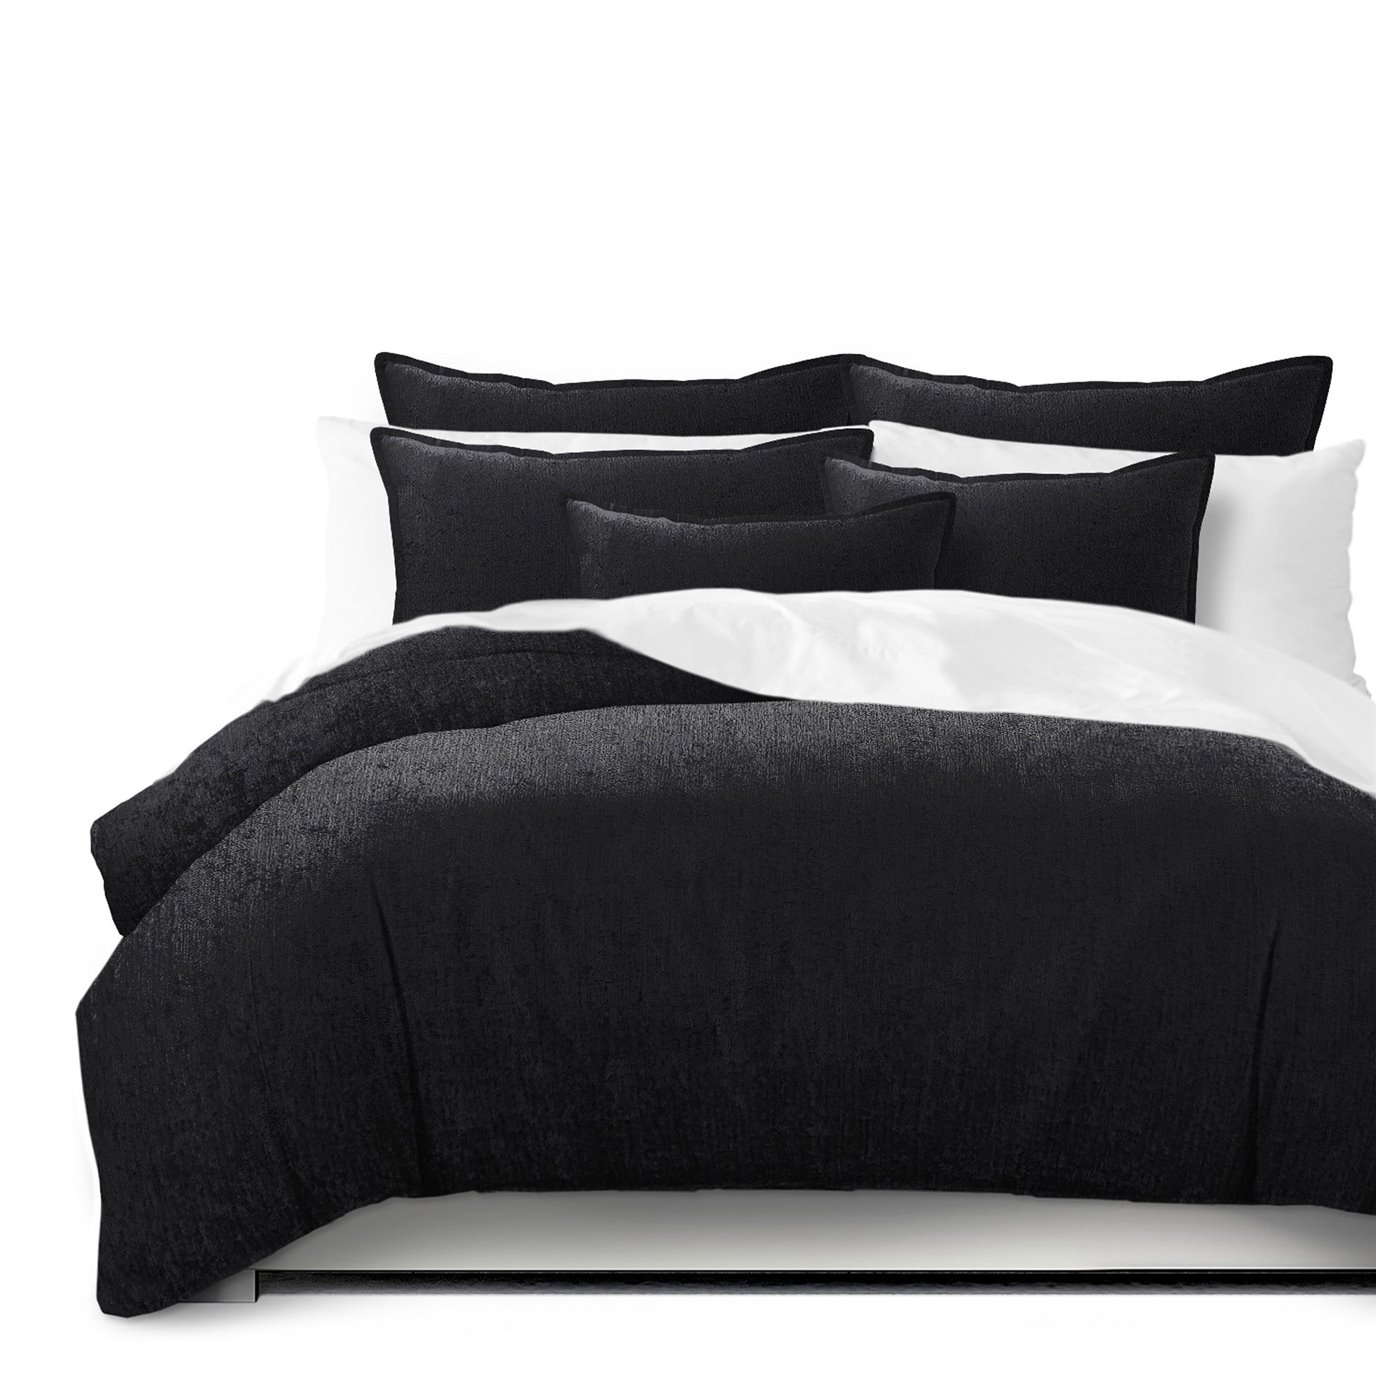 Juno Velvet Black Coverlet and Pillow Sham(s) Set - Size Full